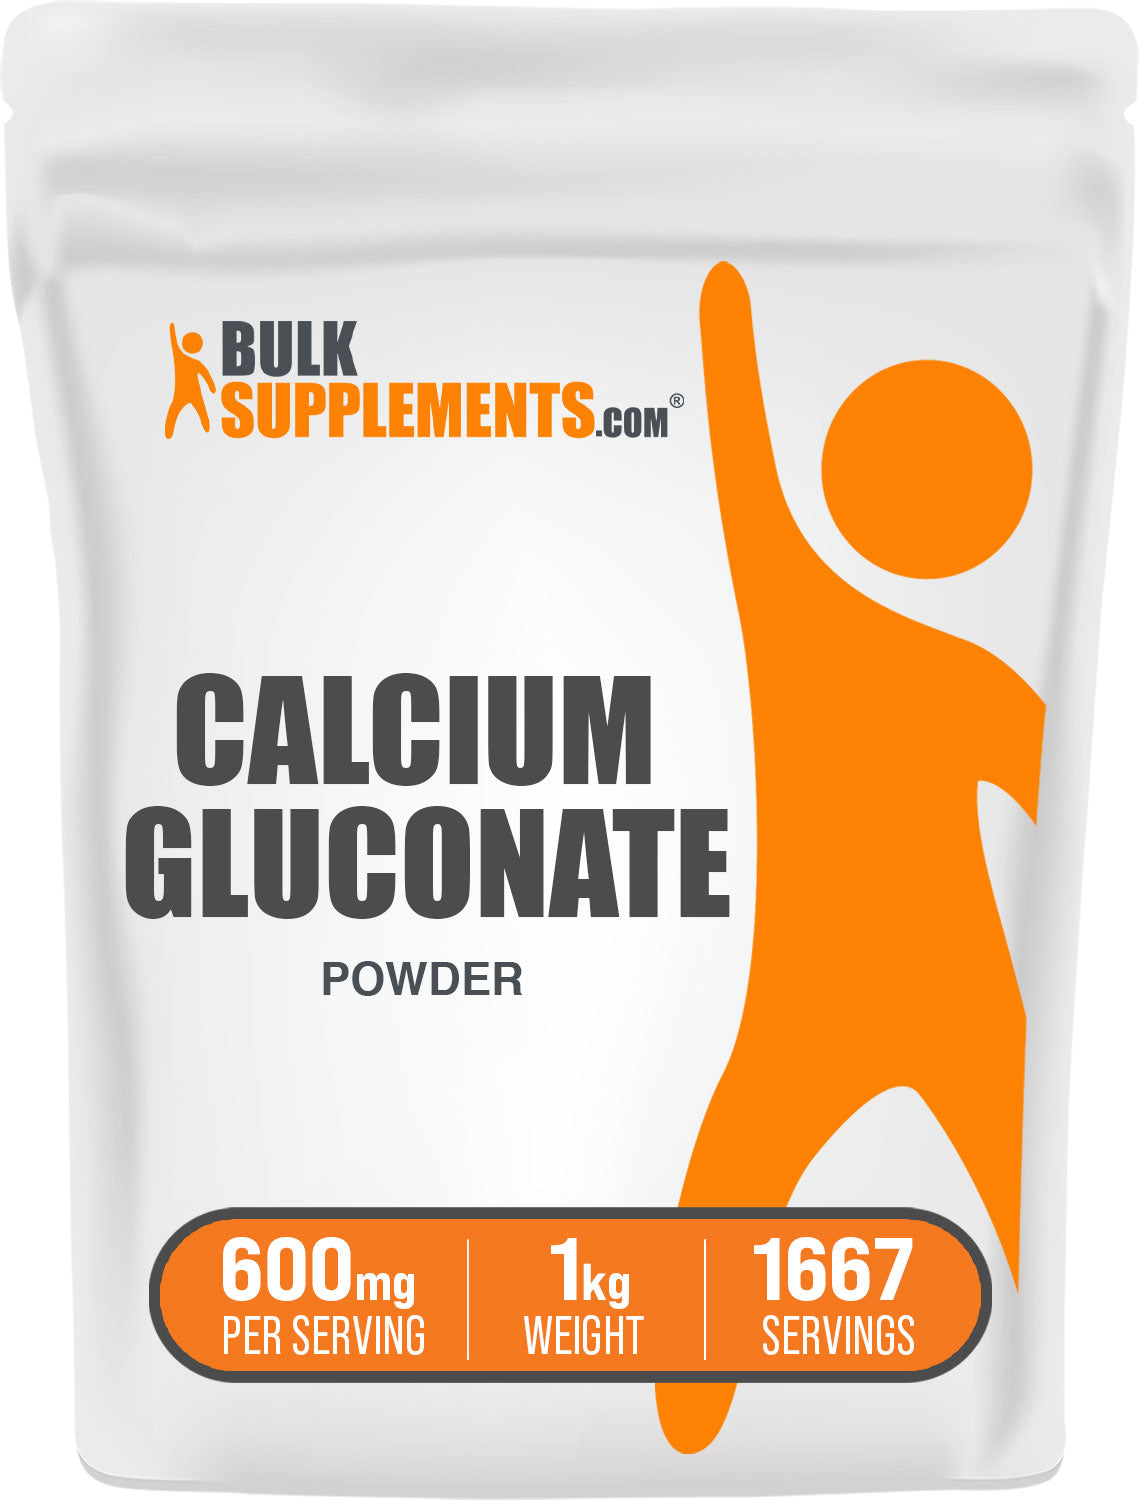 1kg calcium gluconate